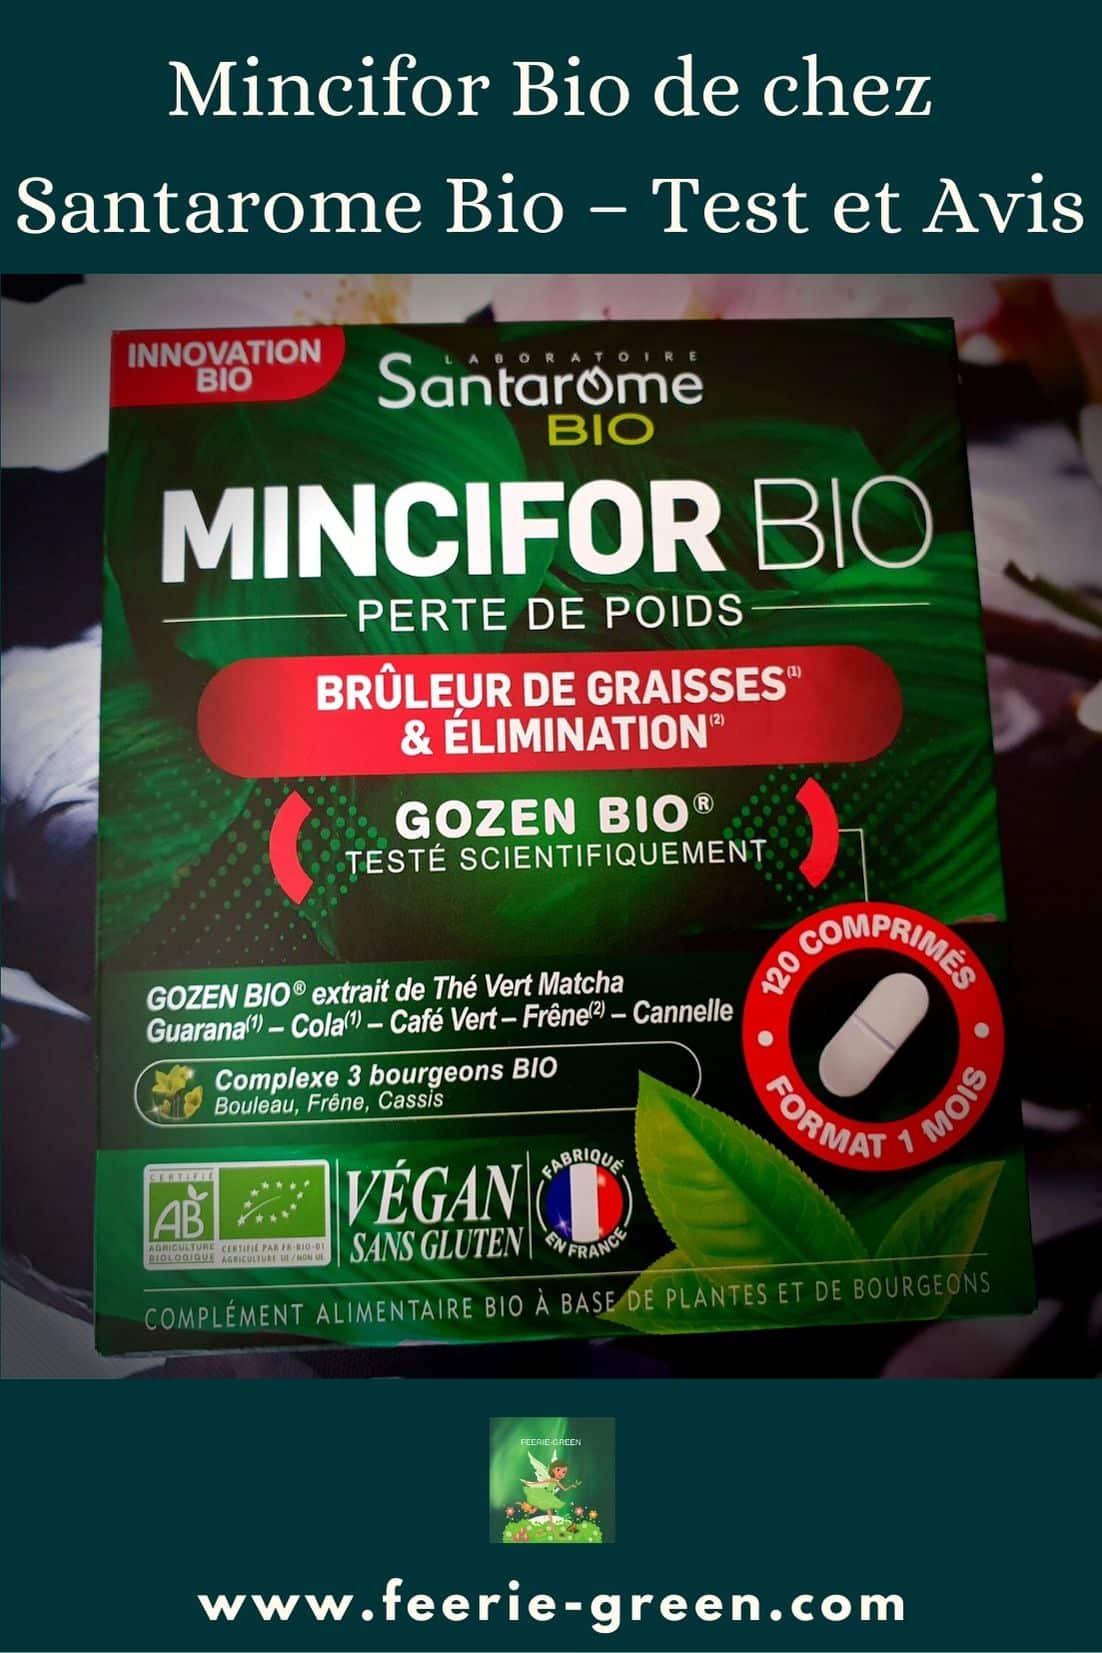 Mincifor Bio de chez Santarome Bio – Test et Avis - pinterest